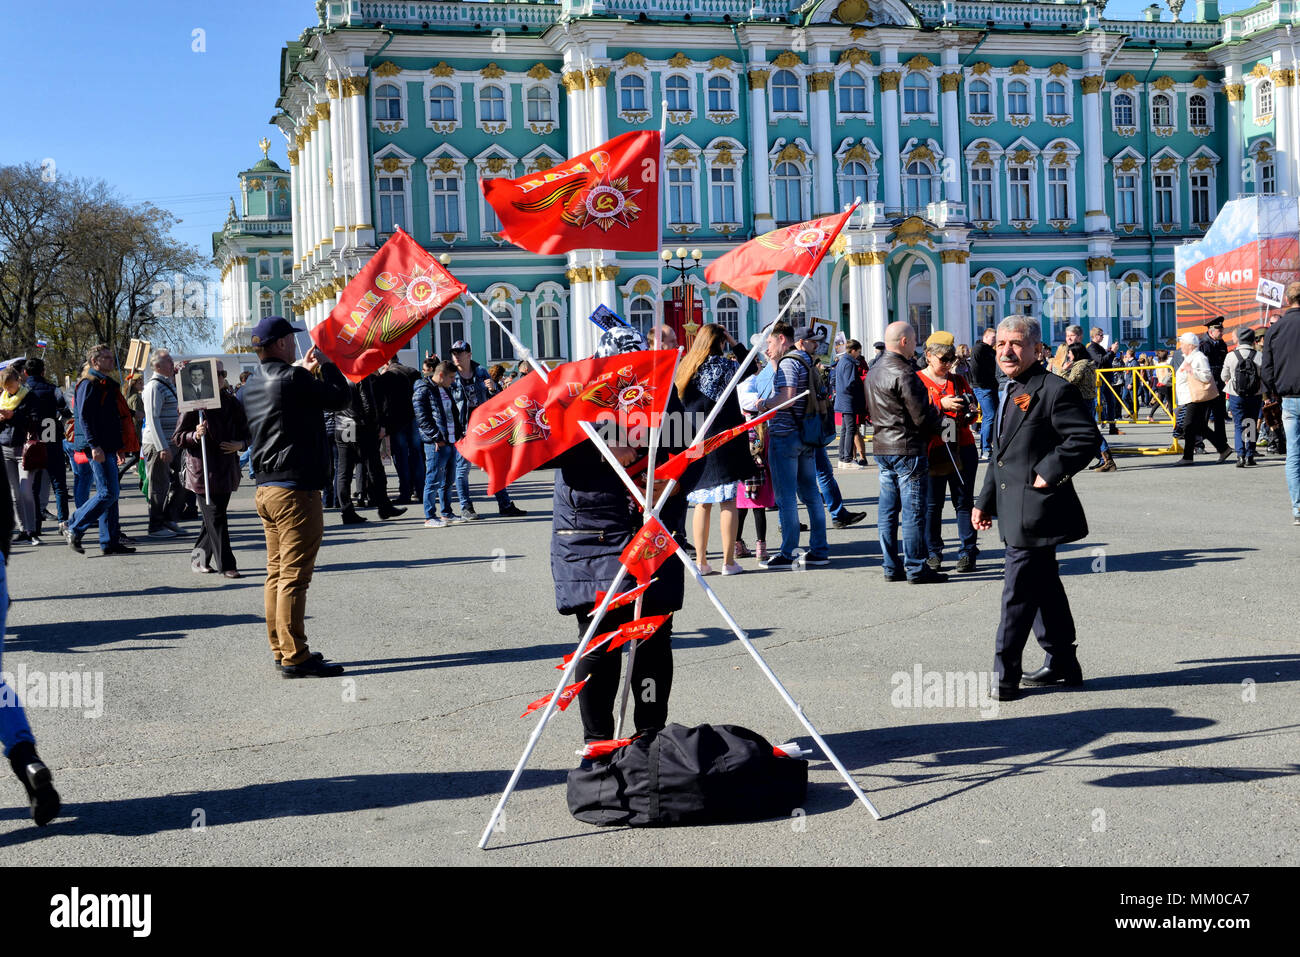 Le vendeur de drapeaux au jour de la Victoire sur la Place du Palais, Saint Petersburg, Russie Banque D'Images